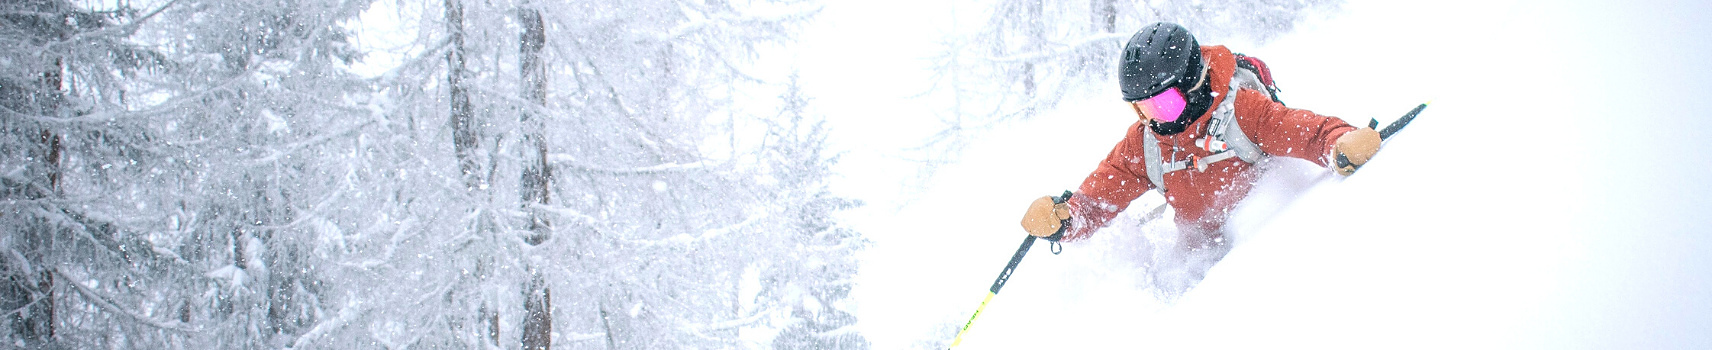 Masque de ski | Juyar, marque française ski & snowboard